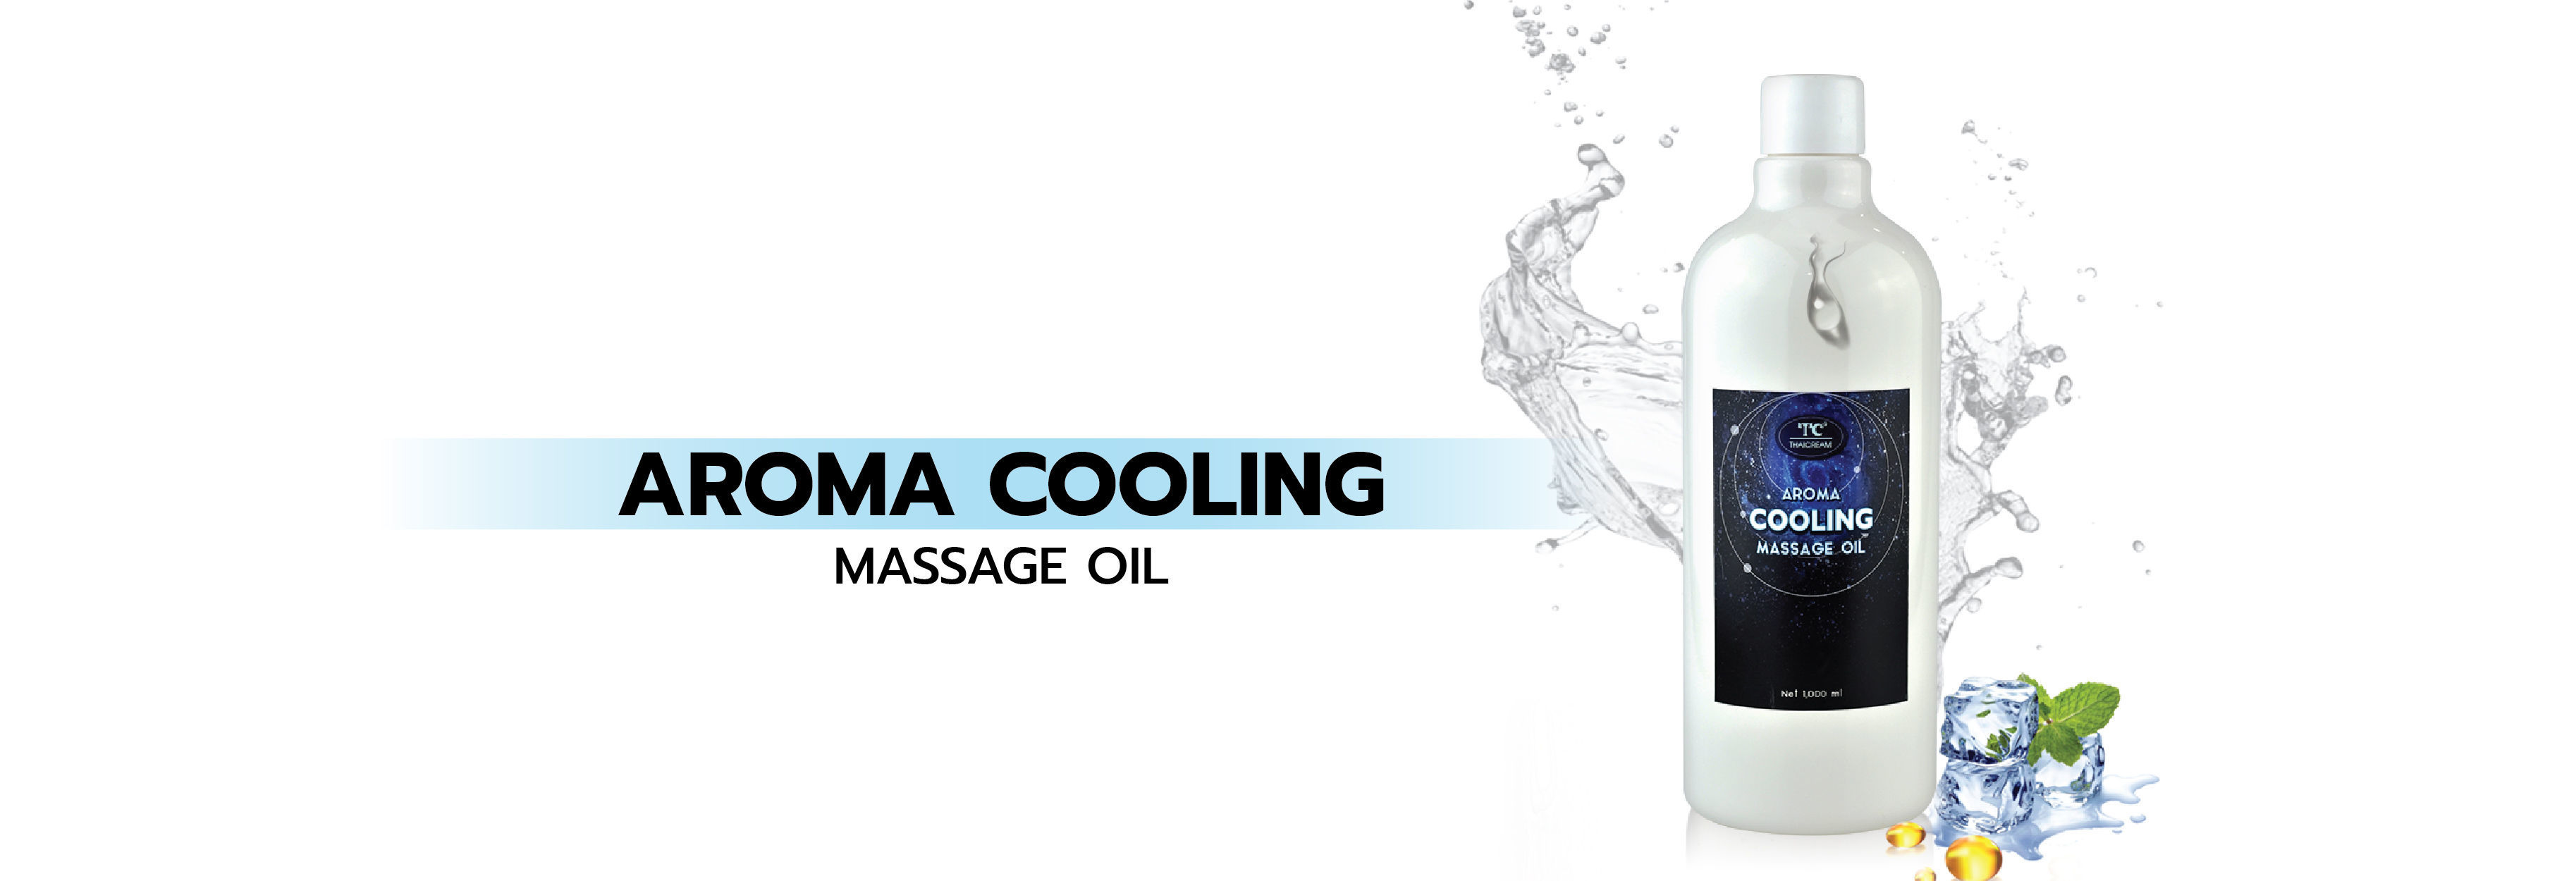 Aroma Cooling Massage Oil อโรม่า คูลลิ่ง มาสสาจ ออย